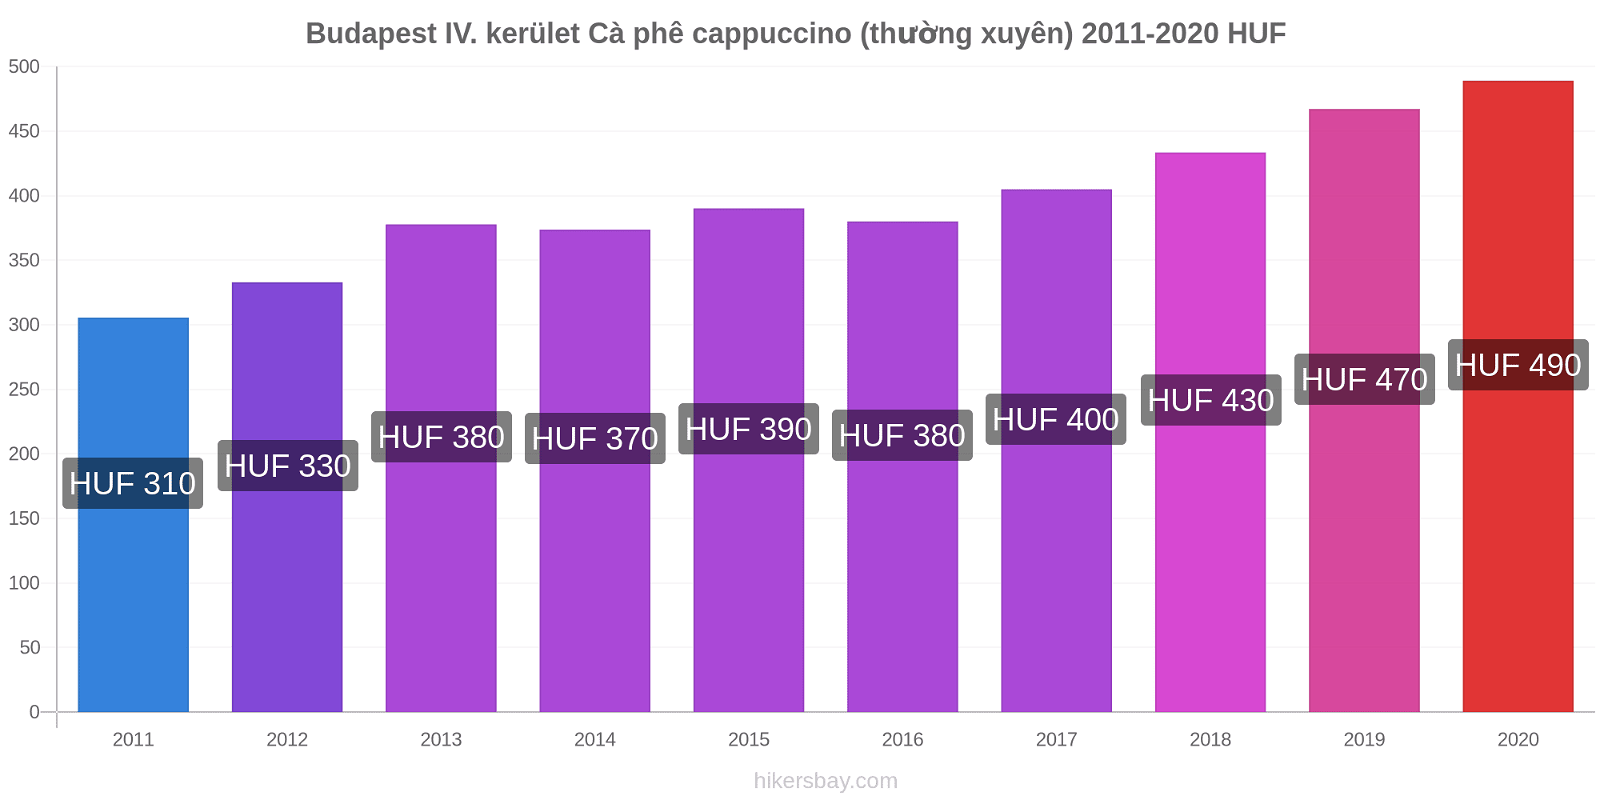 Budapest IV. kerület thay đổi giá Cà phê cappuccino (thường xuyên) hikersbay.com